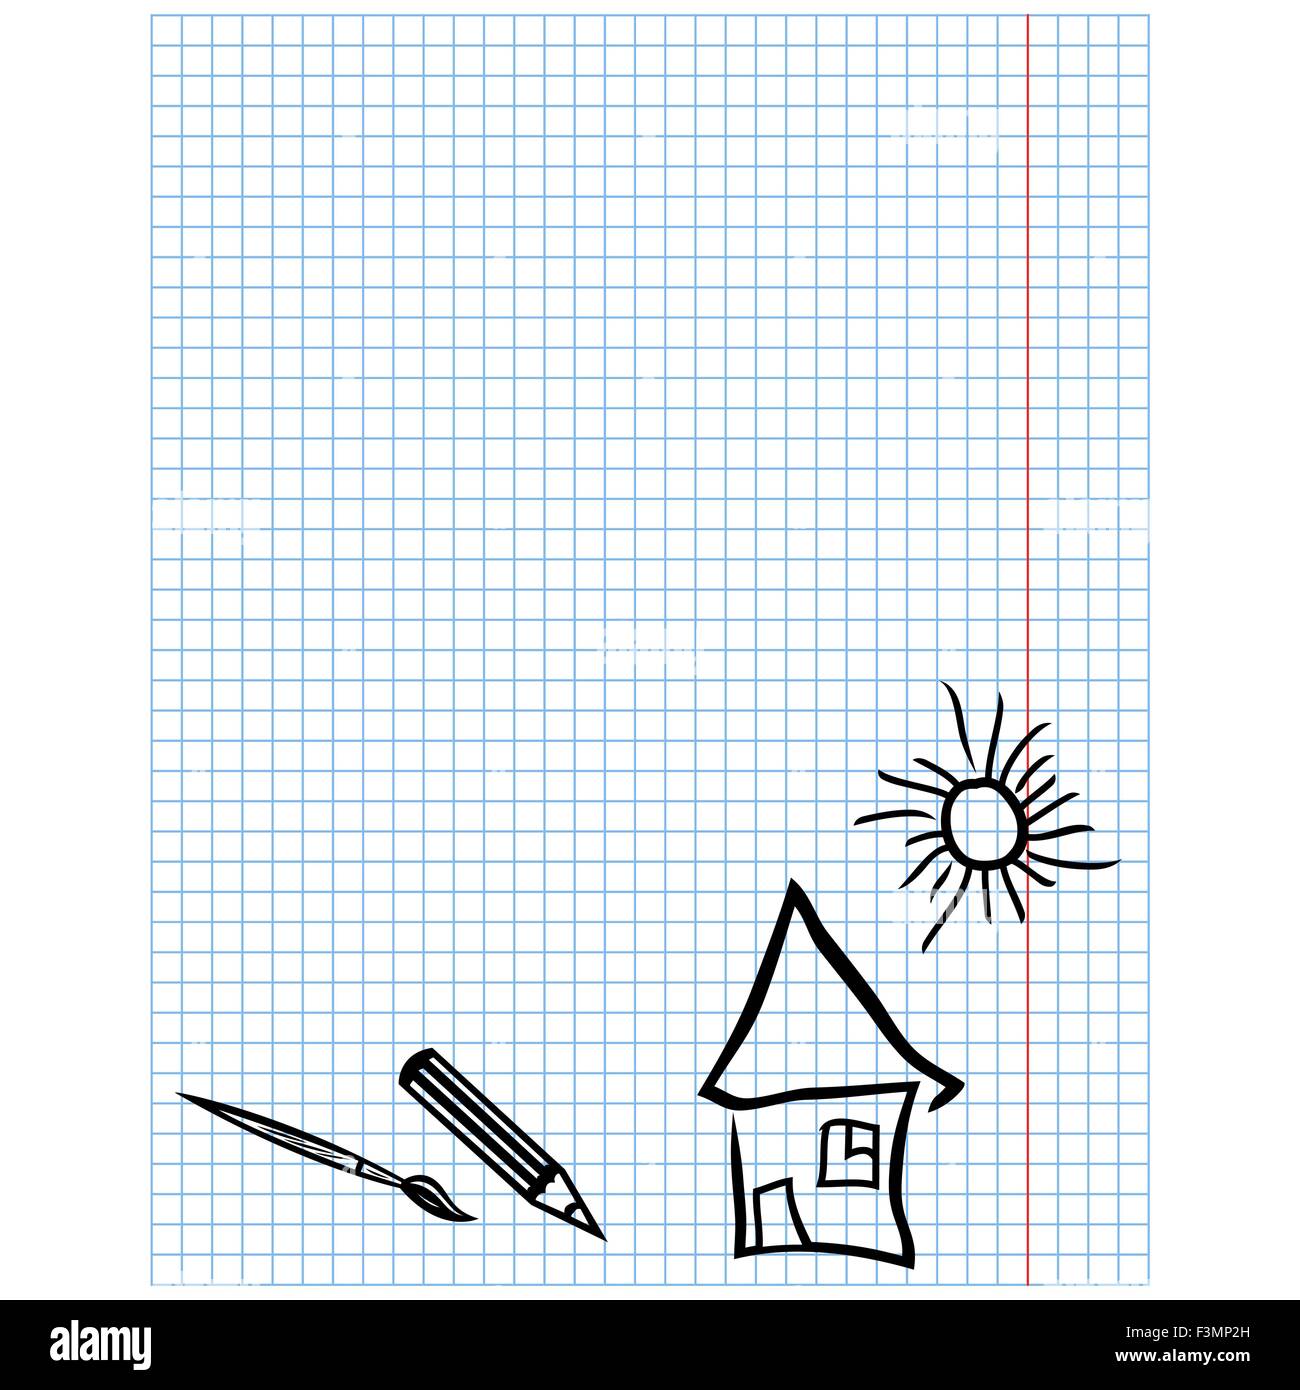 Kindlich einfache Zeichnungen auf kariertem Blatt mit Bildern von Pinsel, Bleistift, Haus und Sonne, Vektor-illustration Stock Vektor